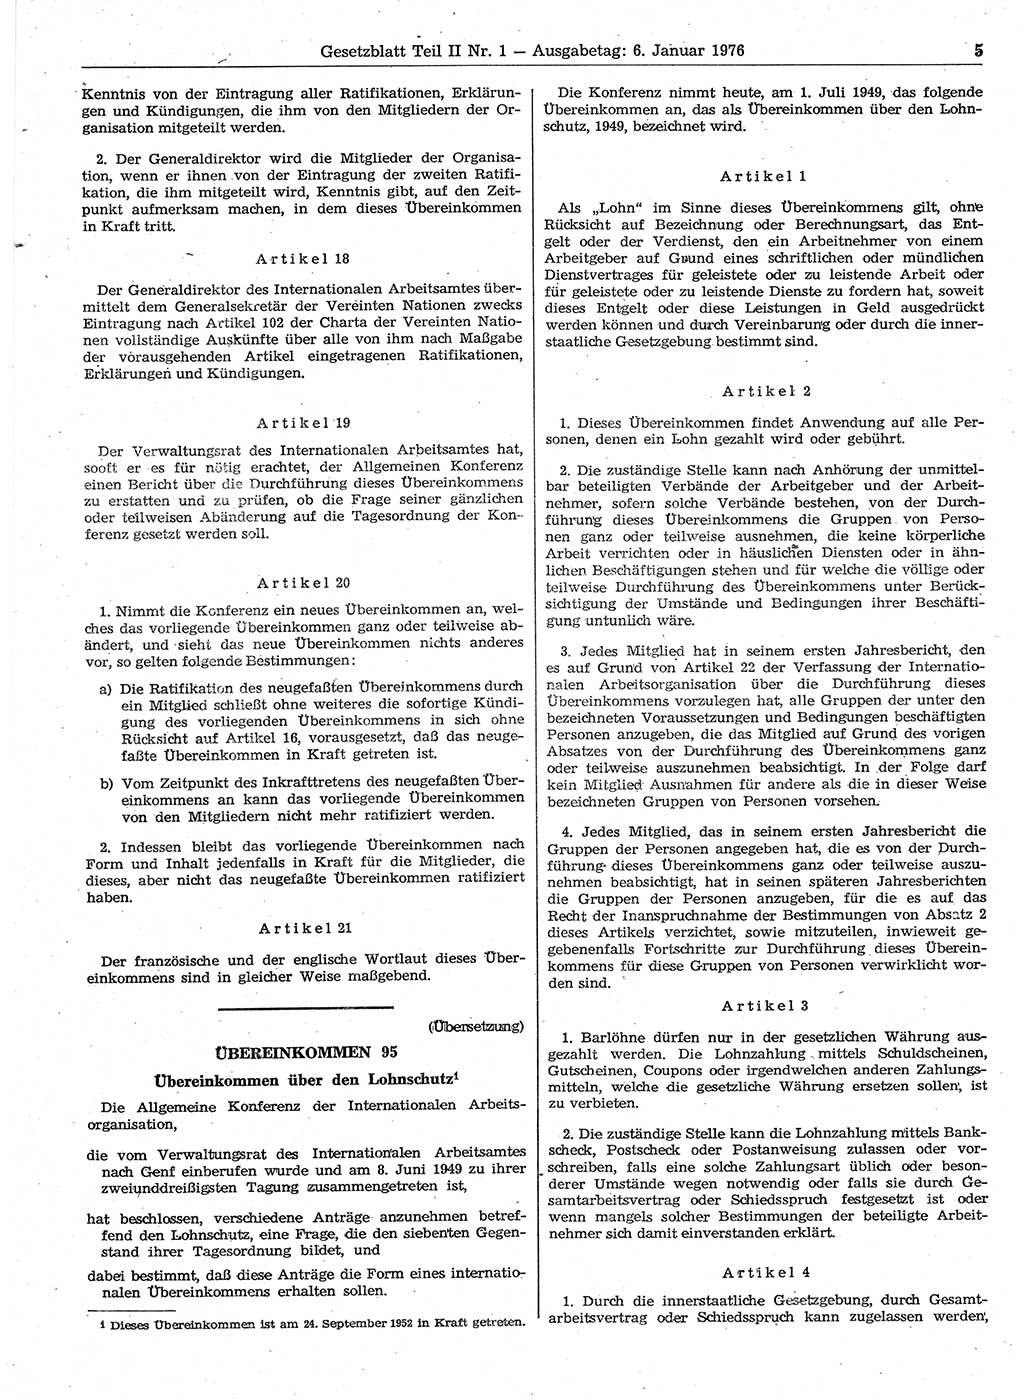 Gesetzblatt (GBl.) der Deutschen Demokratischen Republik (DDR) Teil ⅠⅠ 1976, Seite 5 (GBl. DDR ⅠⅠ 1976, S. 5)